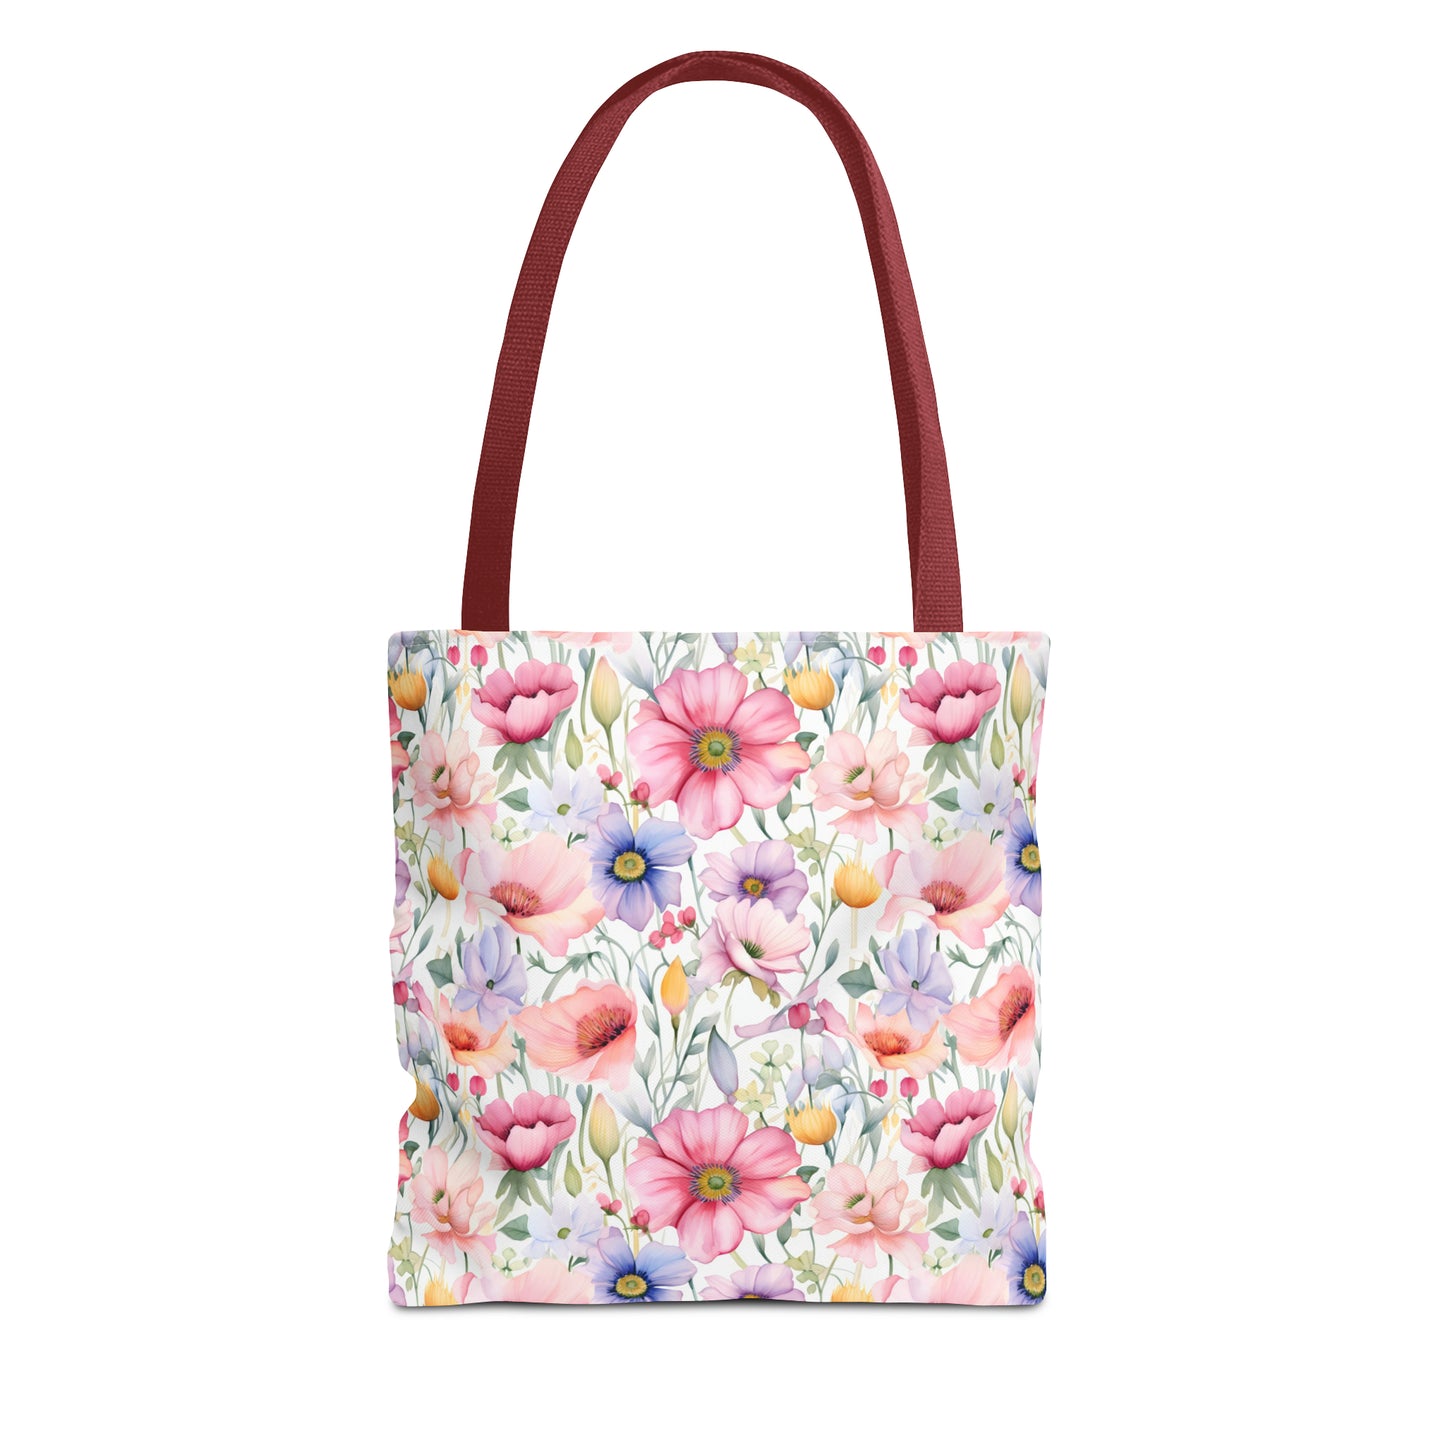 Pastel Blooms Wildflower Tote Bag (13" x 13")